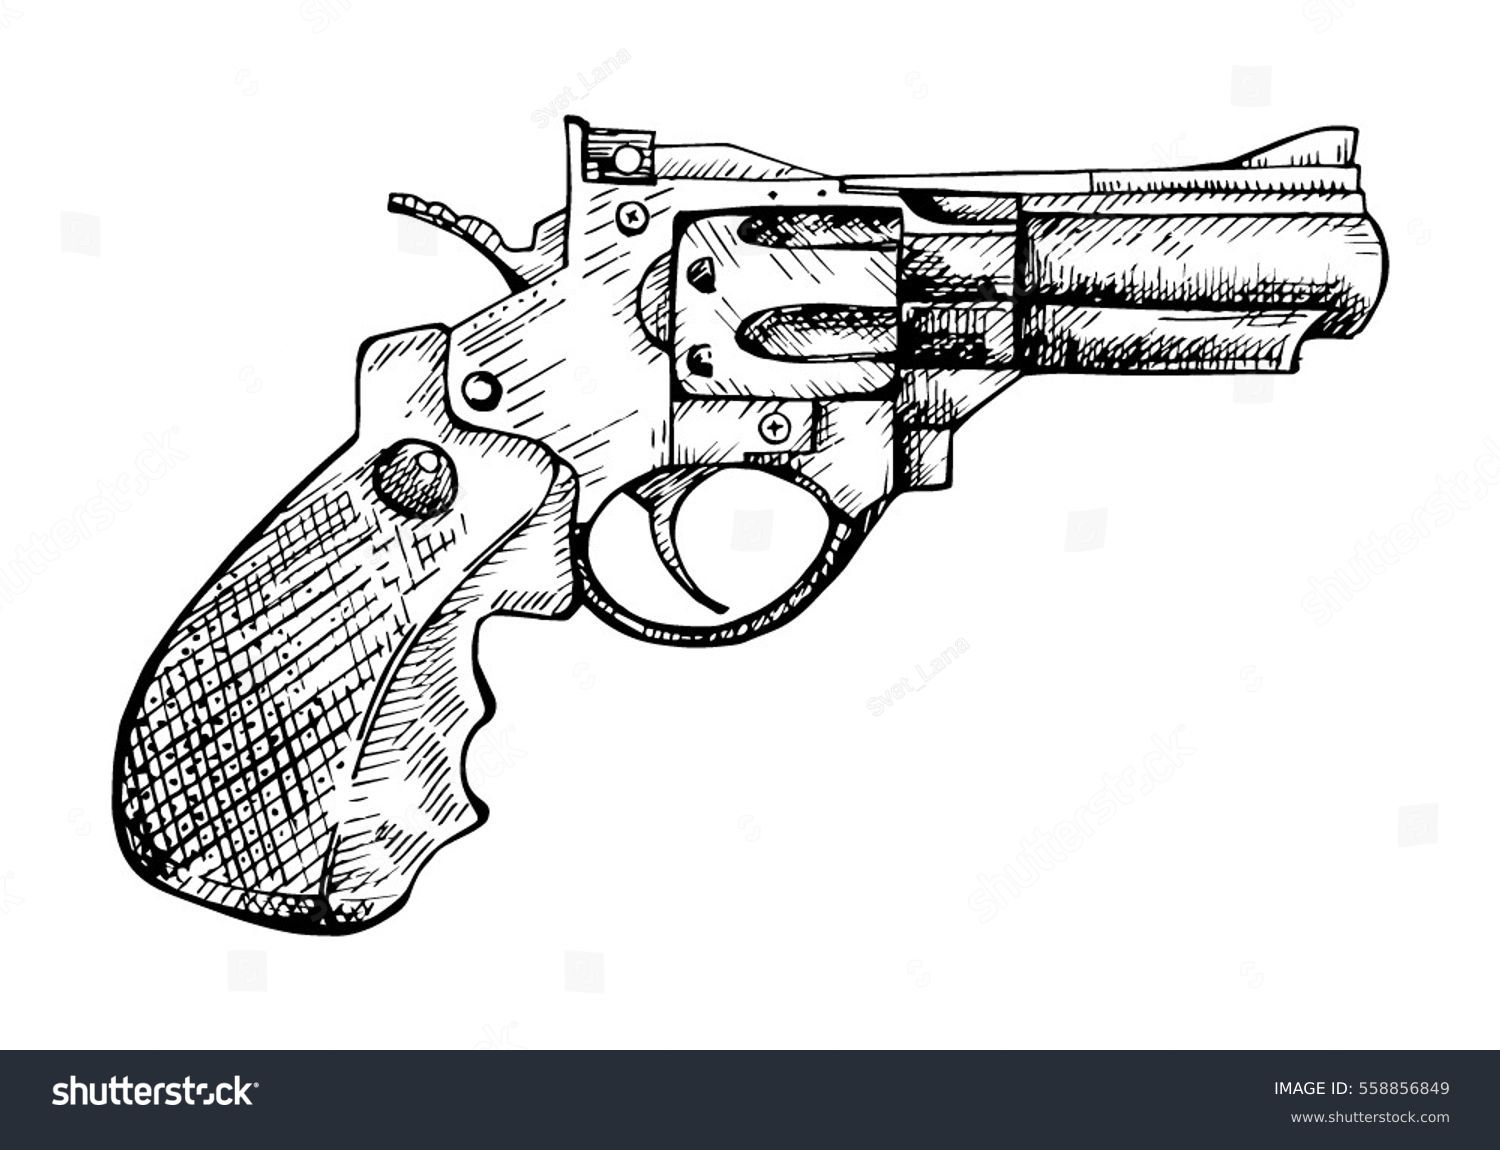 Револьвер спереди рисунок